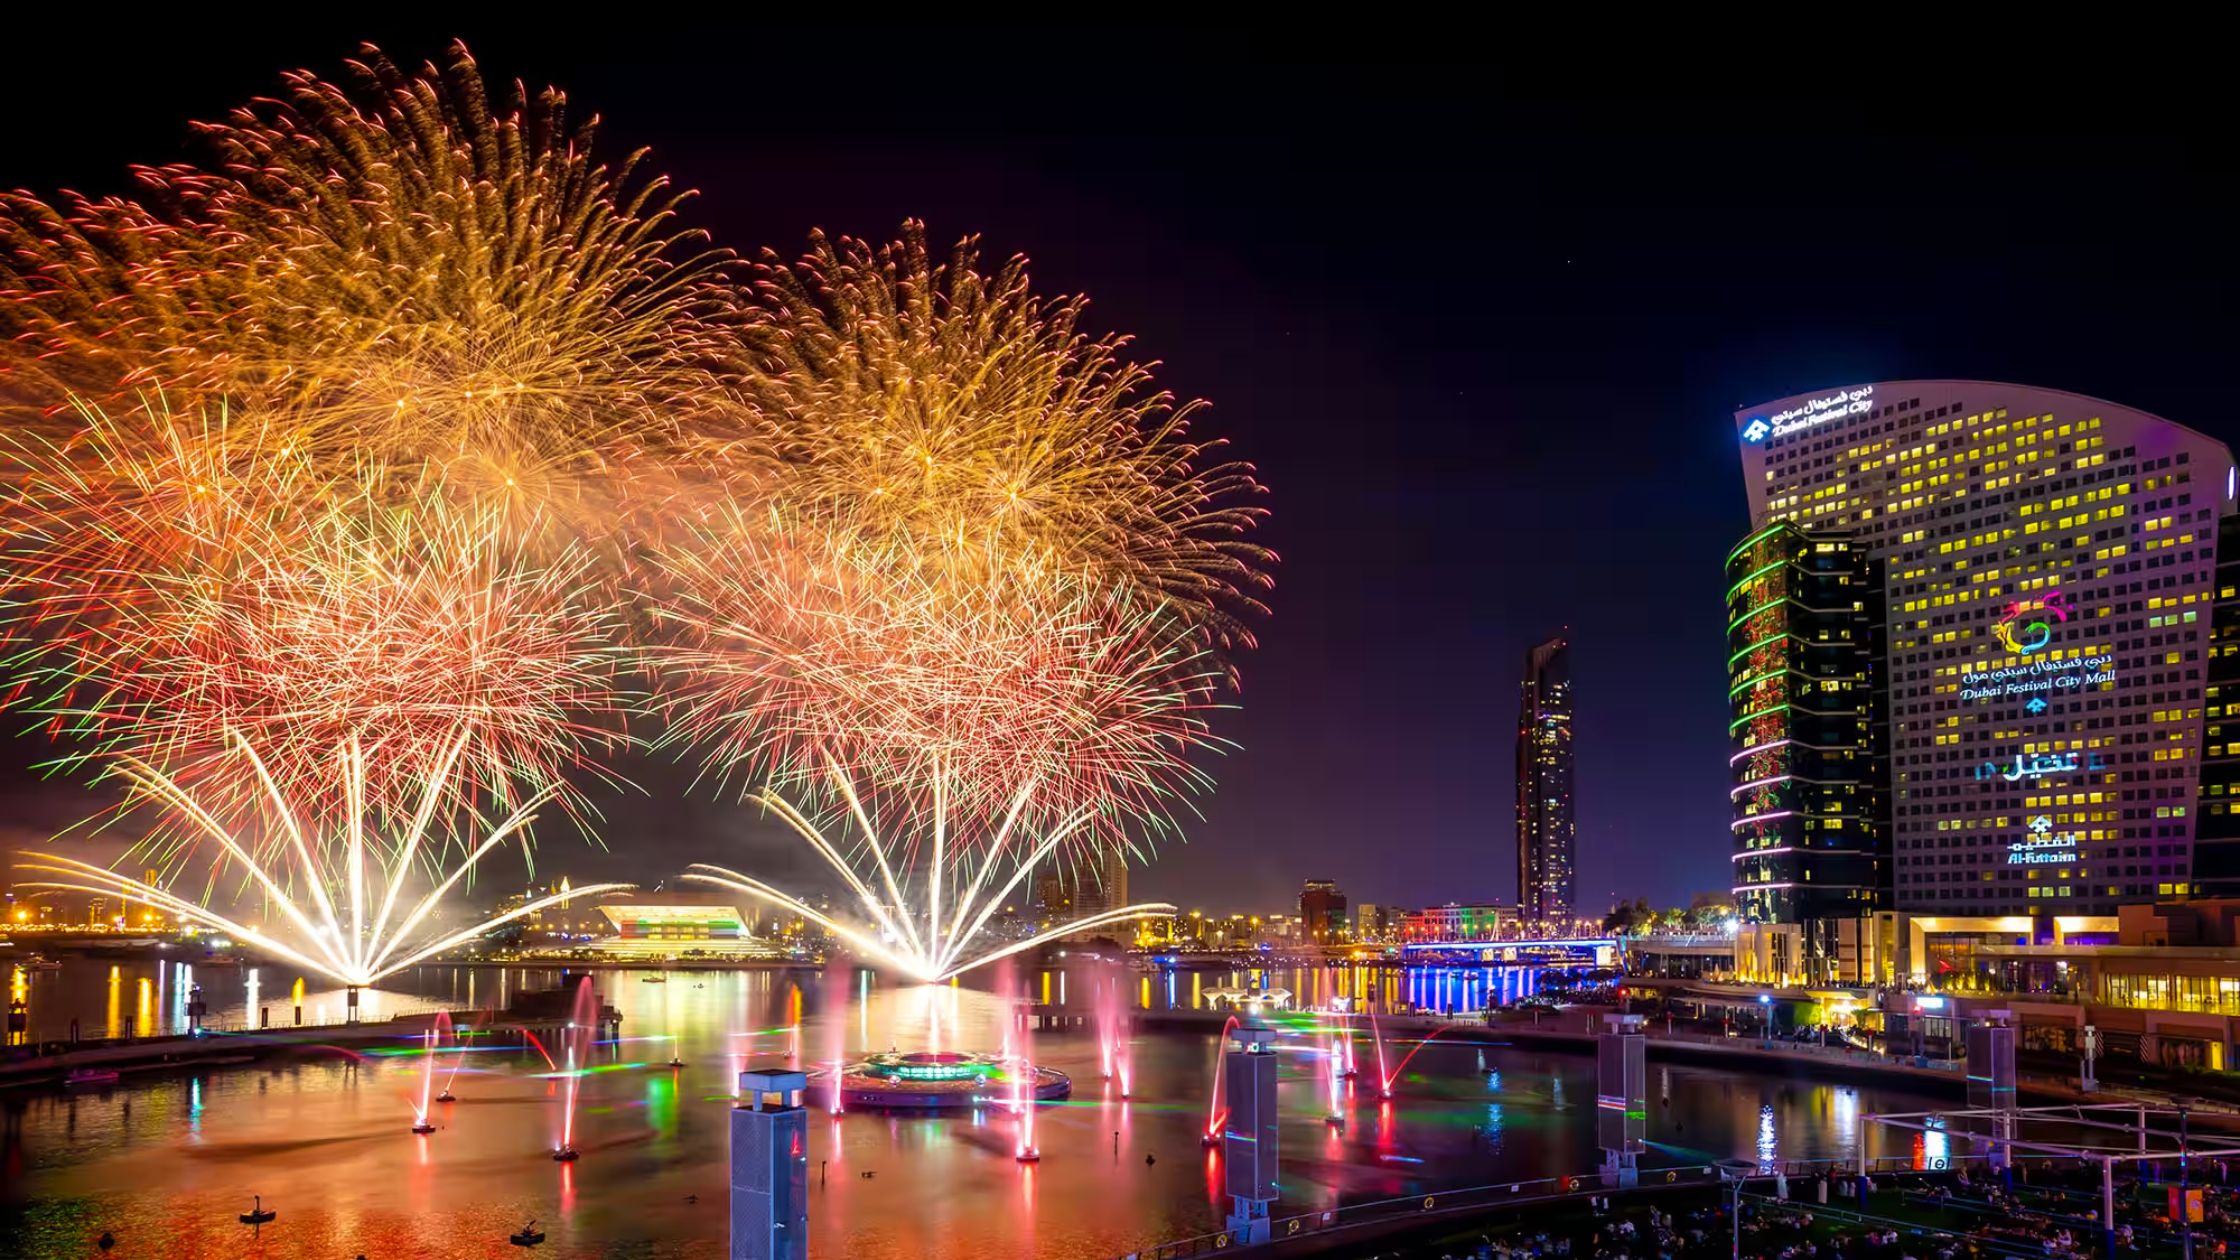 Festivals of the UAE